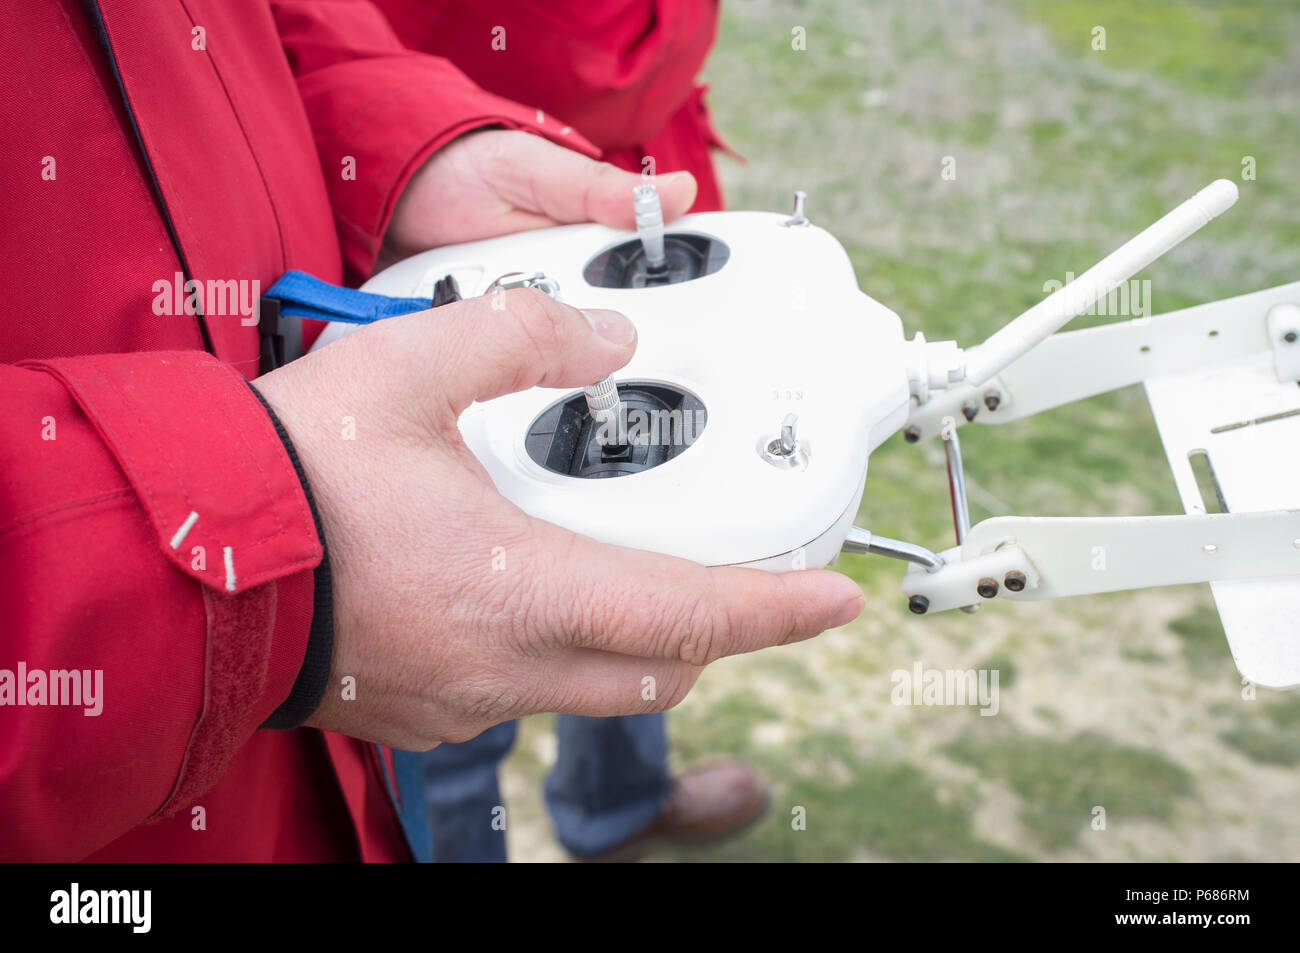 Manovra pilota dron sul controller remoto. Spostamento a destra stick di comando per la valvola a farfalla Foto Stock